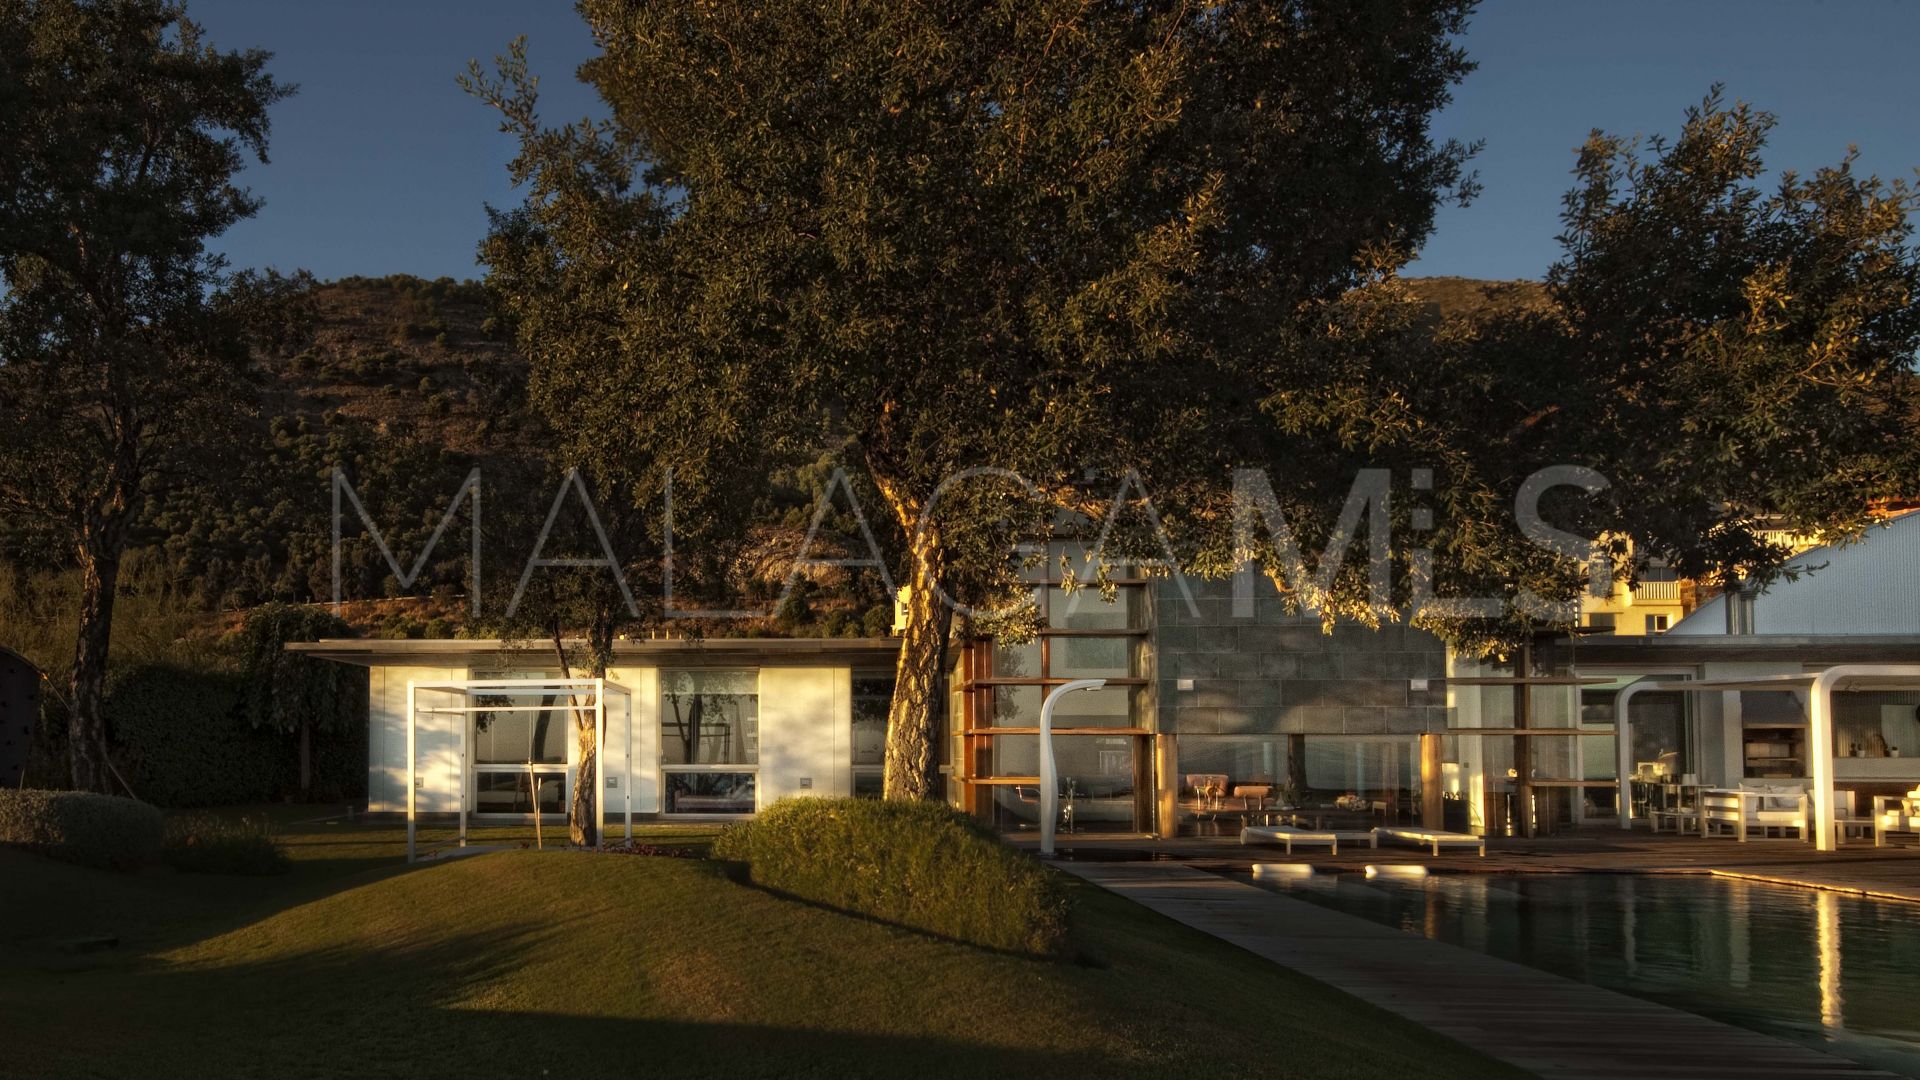 4 bedrooms Fuengirola villa for sale